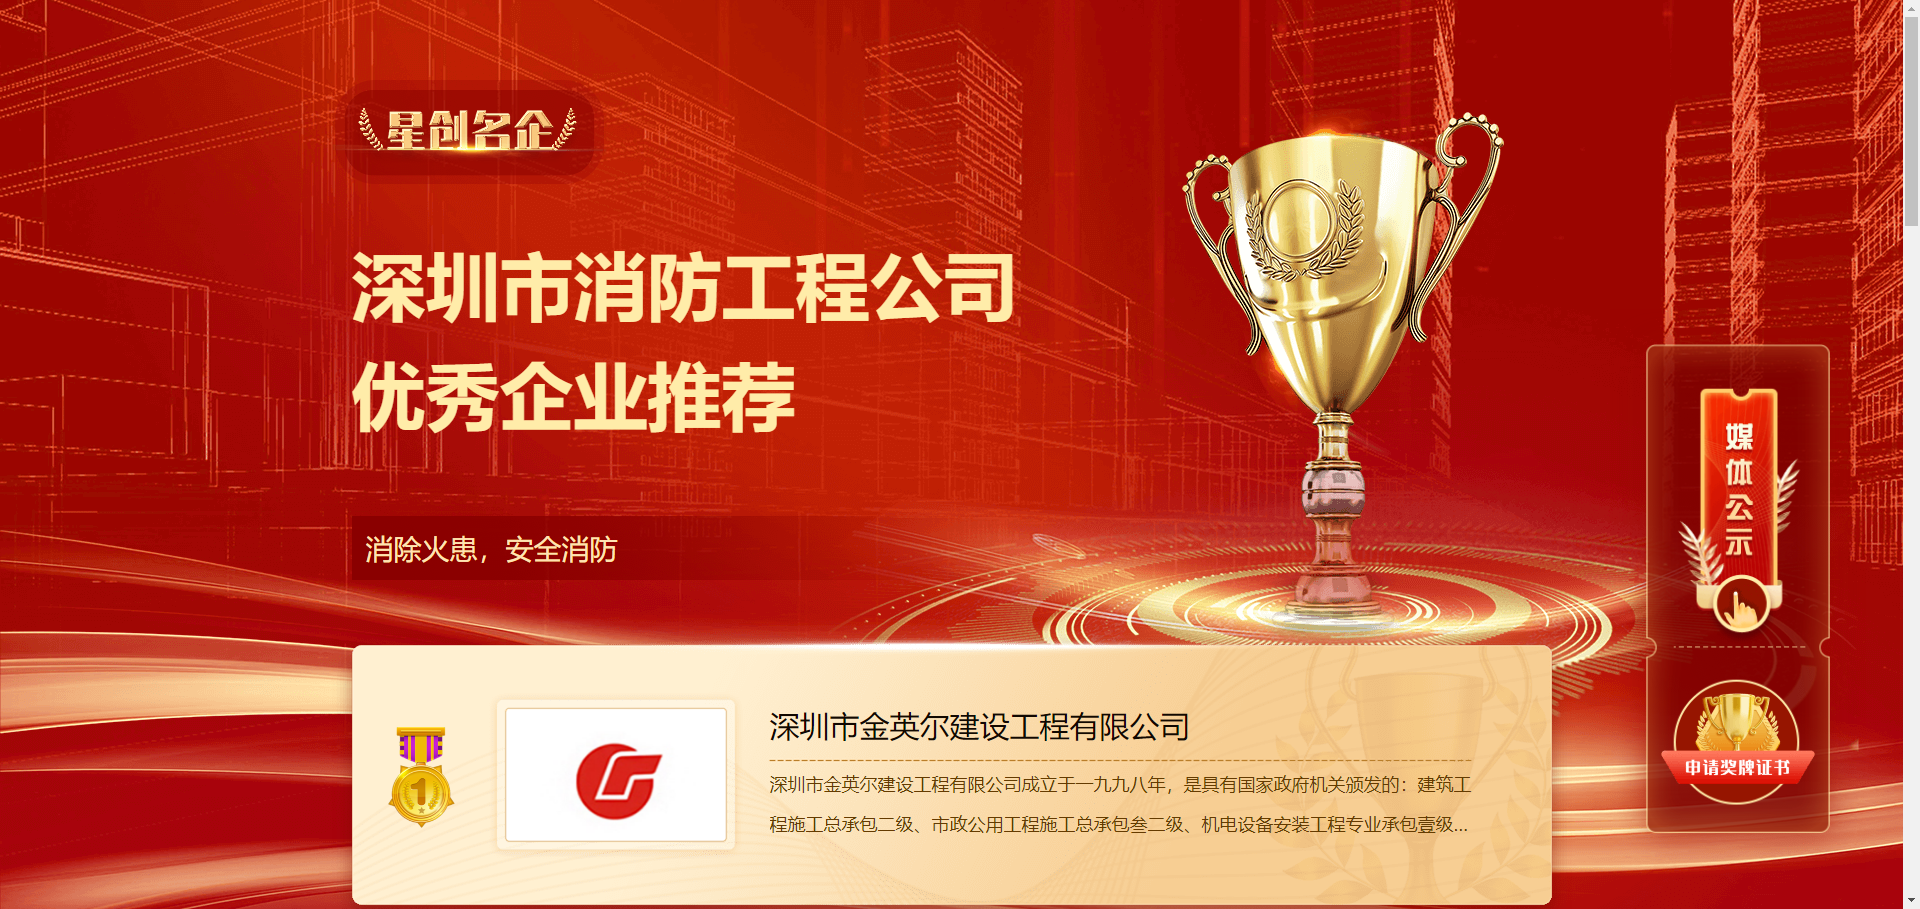 我司荣获深圳市消防工程公司优秀企业第一名